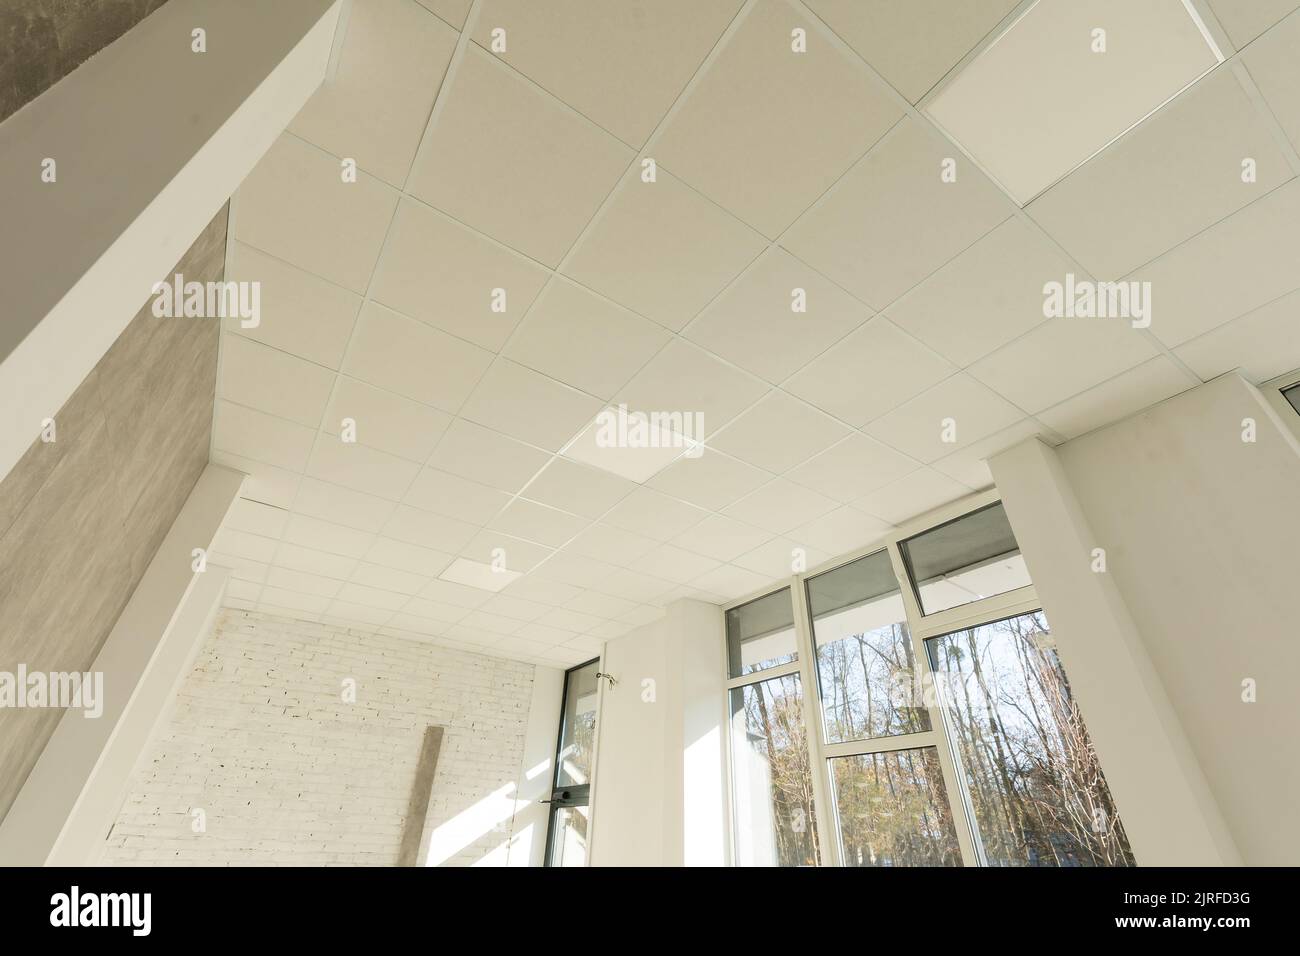 Hängende weiße Decke aus Styropor-Fliesen Stockfotografie - Alamy